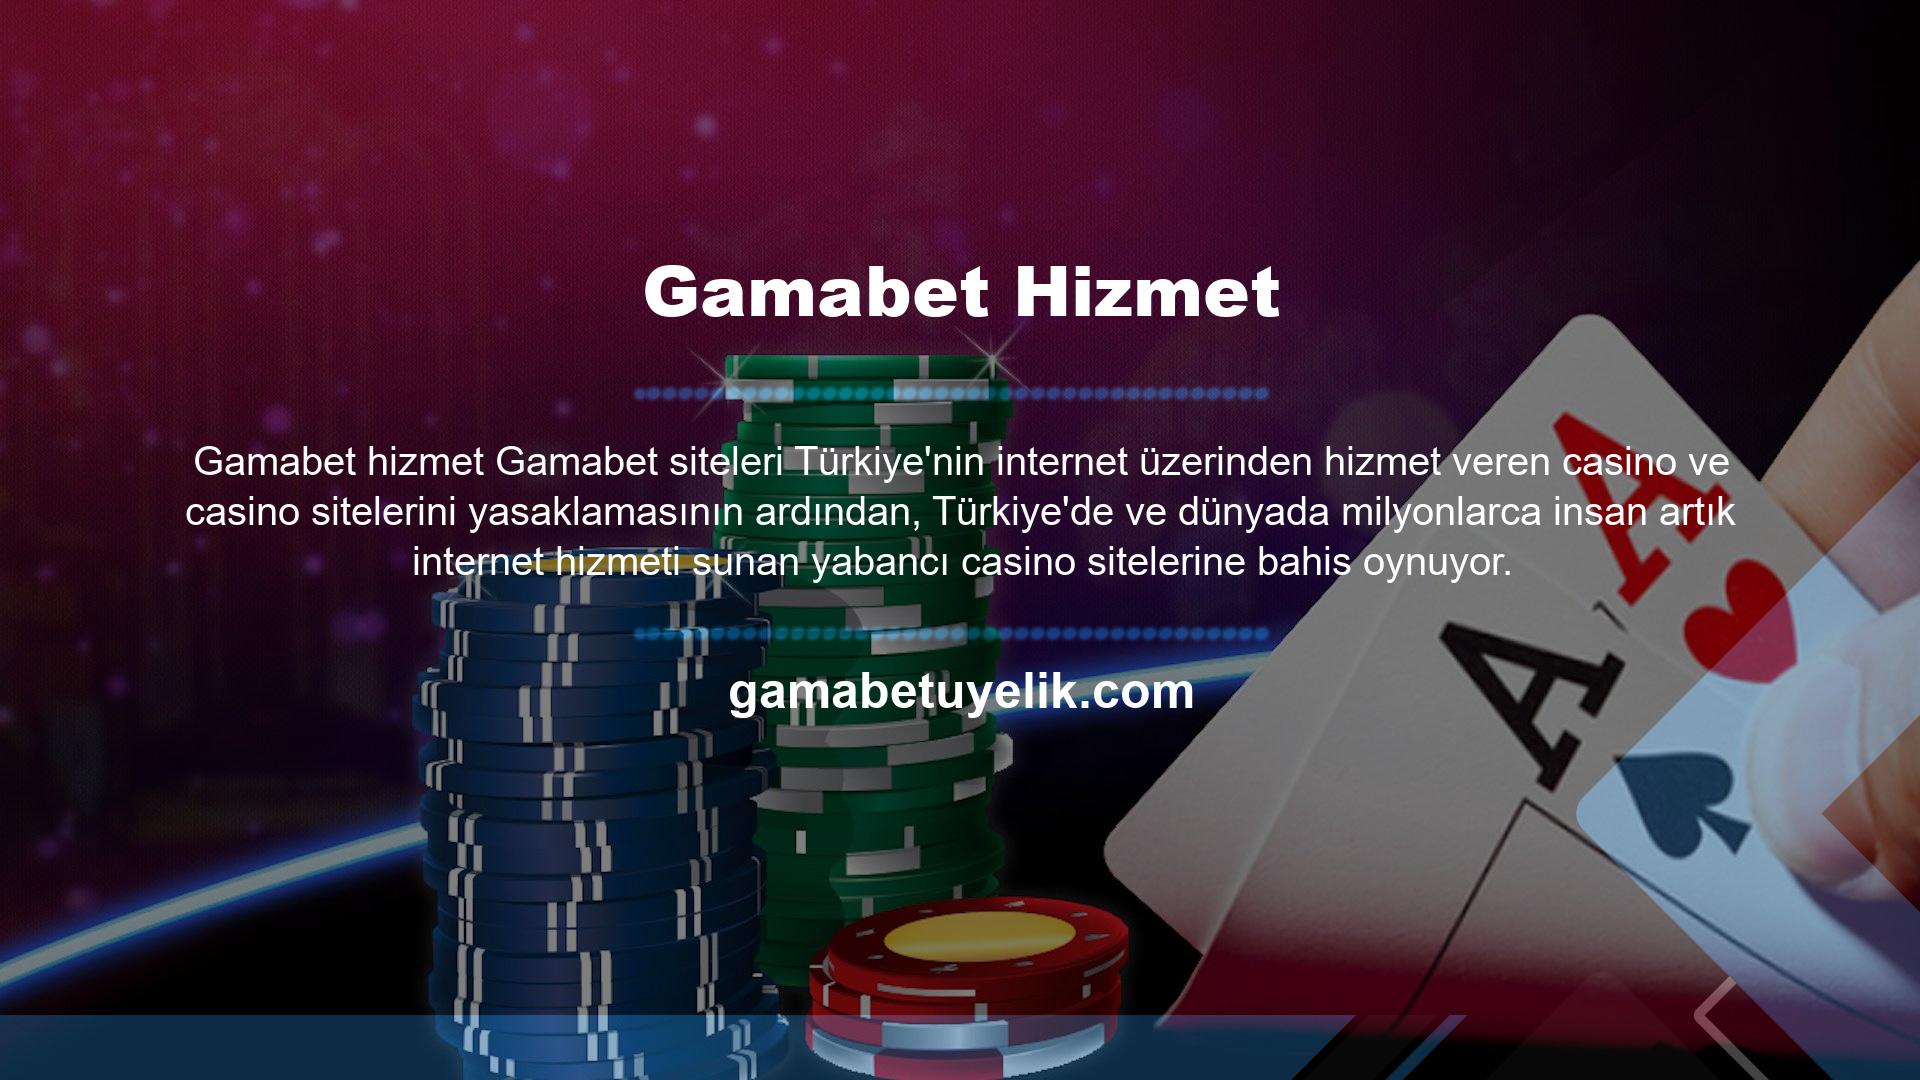 Resmi Türk bahisçilerin sunduğu düşük oranlar ve soru çeşitliliği ile para kazanmak zor olsa da artık online bahis oynayarak daha kolay para kazanabilirsiniz